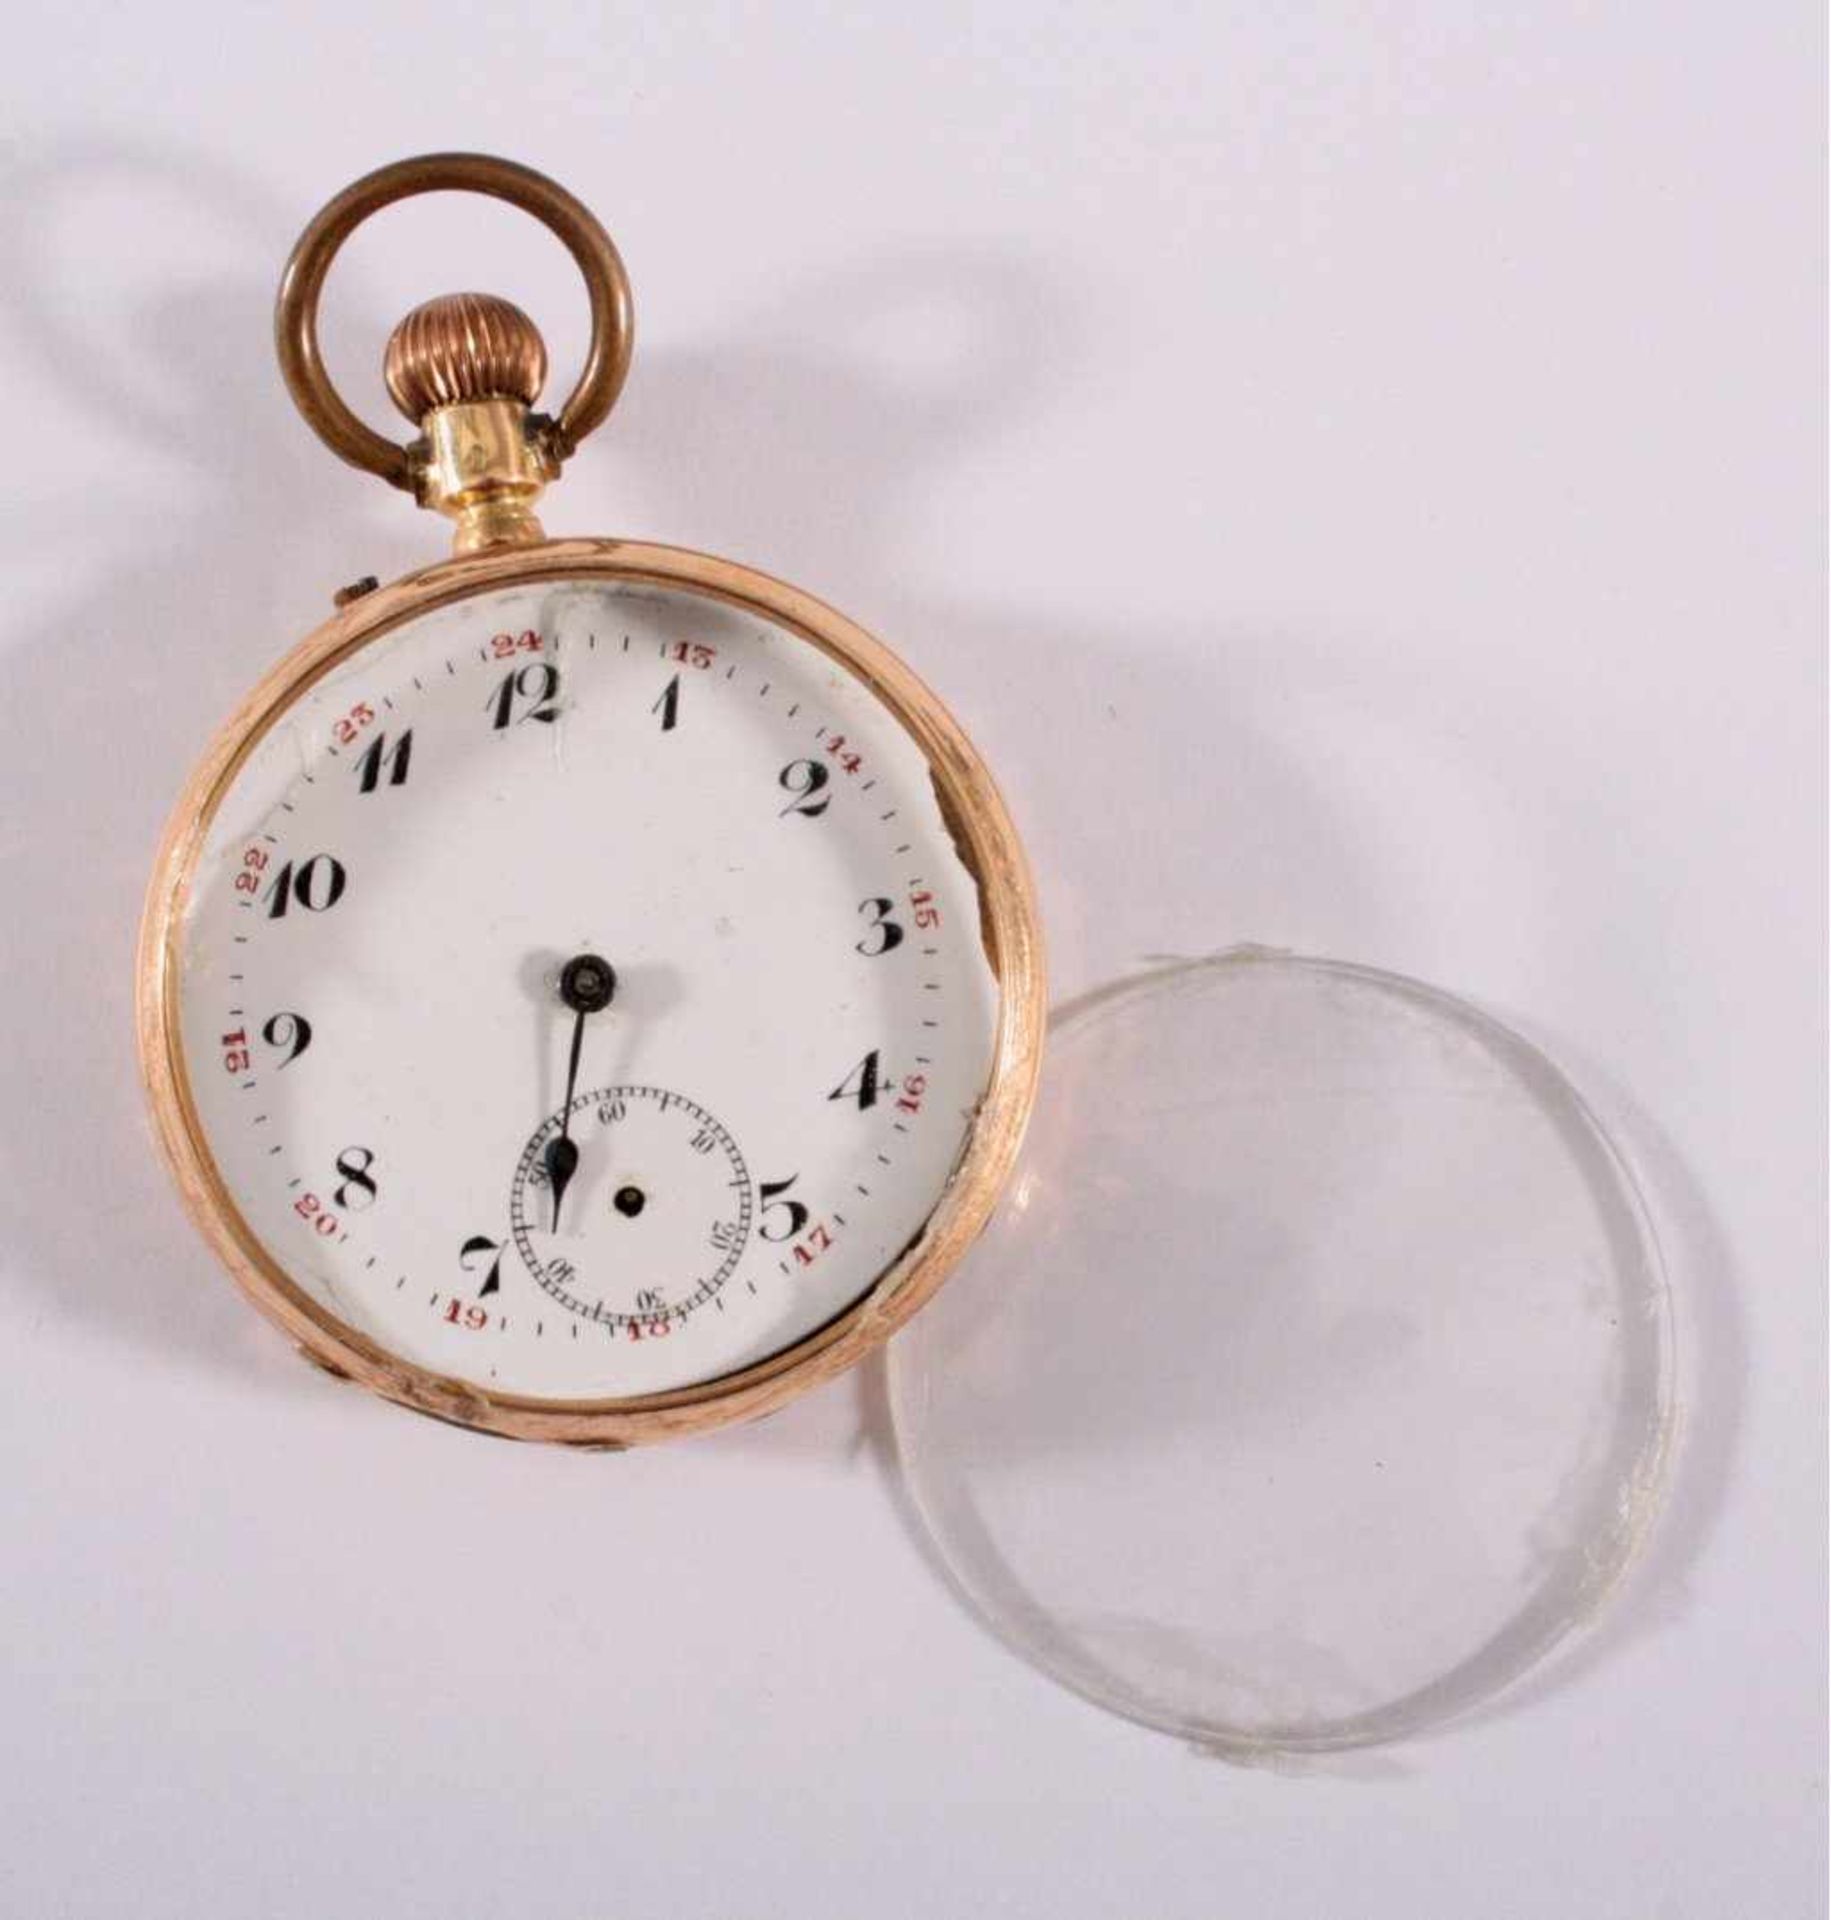 Herrentaschenuhr um 190014 kt Gelbgold im Uhren Deckel nummeriert 48412,Emailziferblatt mit